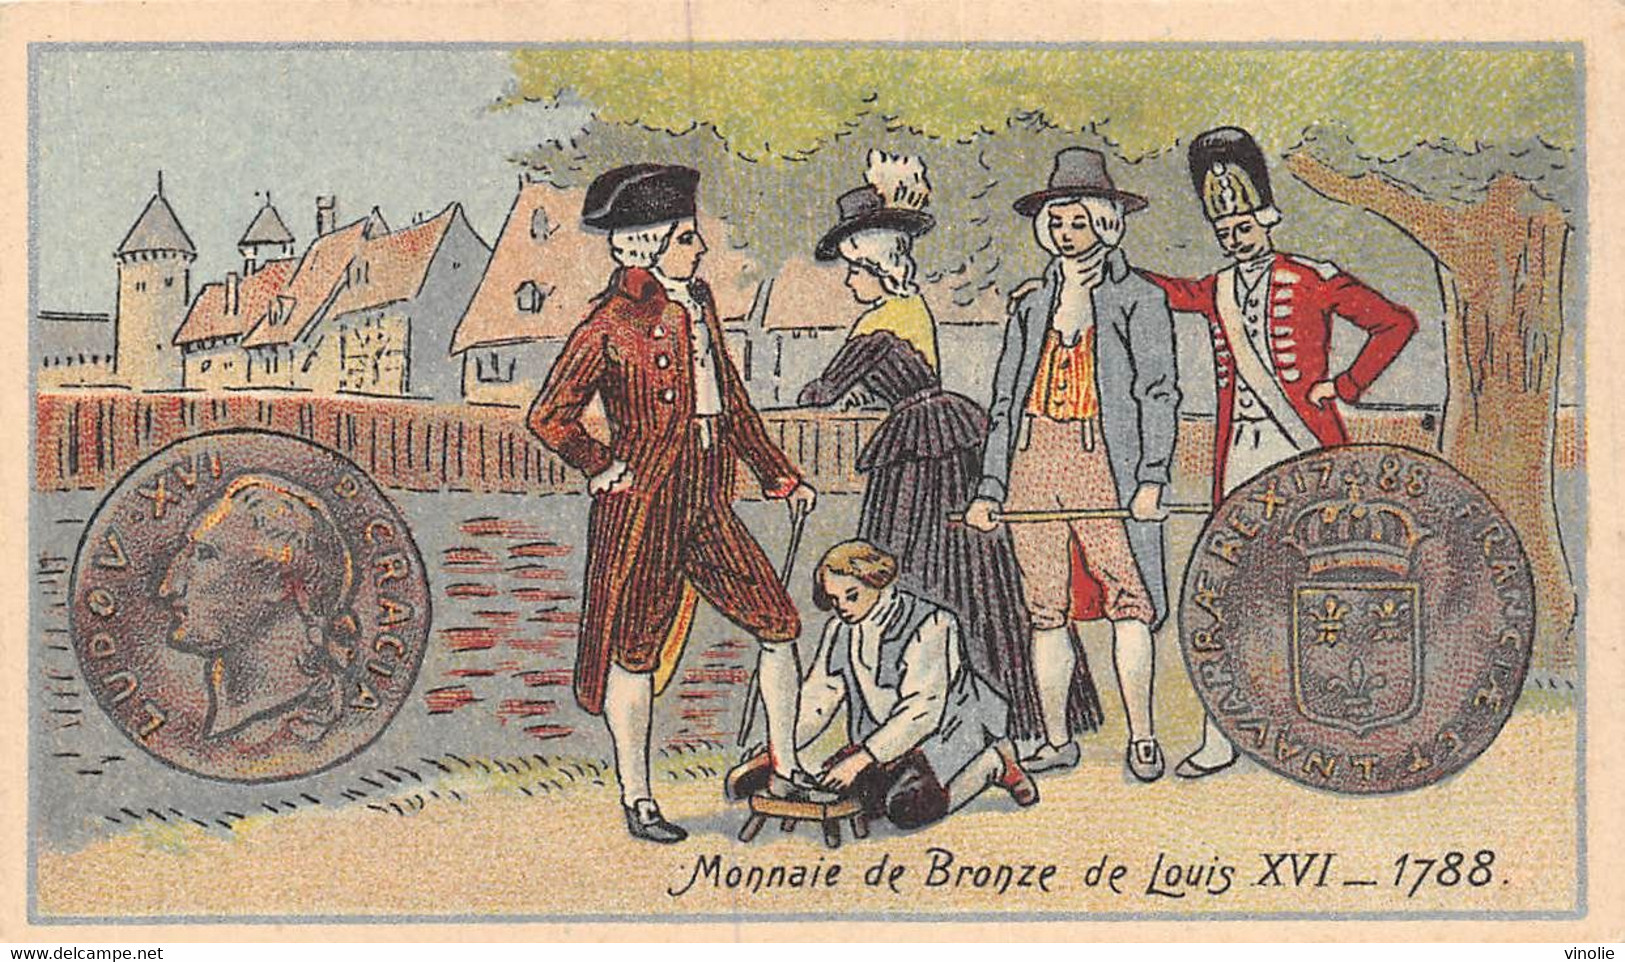 P.21-FO-1547 : IMAGE. CHROMOLITHOGRAPHIE. THEME MONNAIE. MONNAIE DE BRONZE DE LOUIS XVI. 1788 - Unclassified